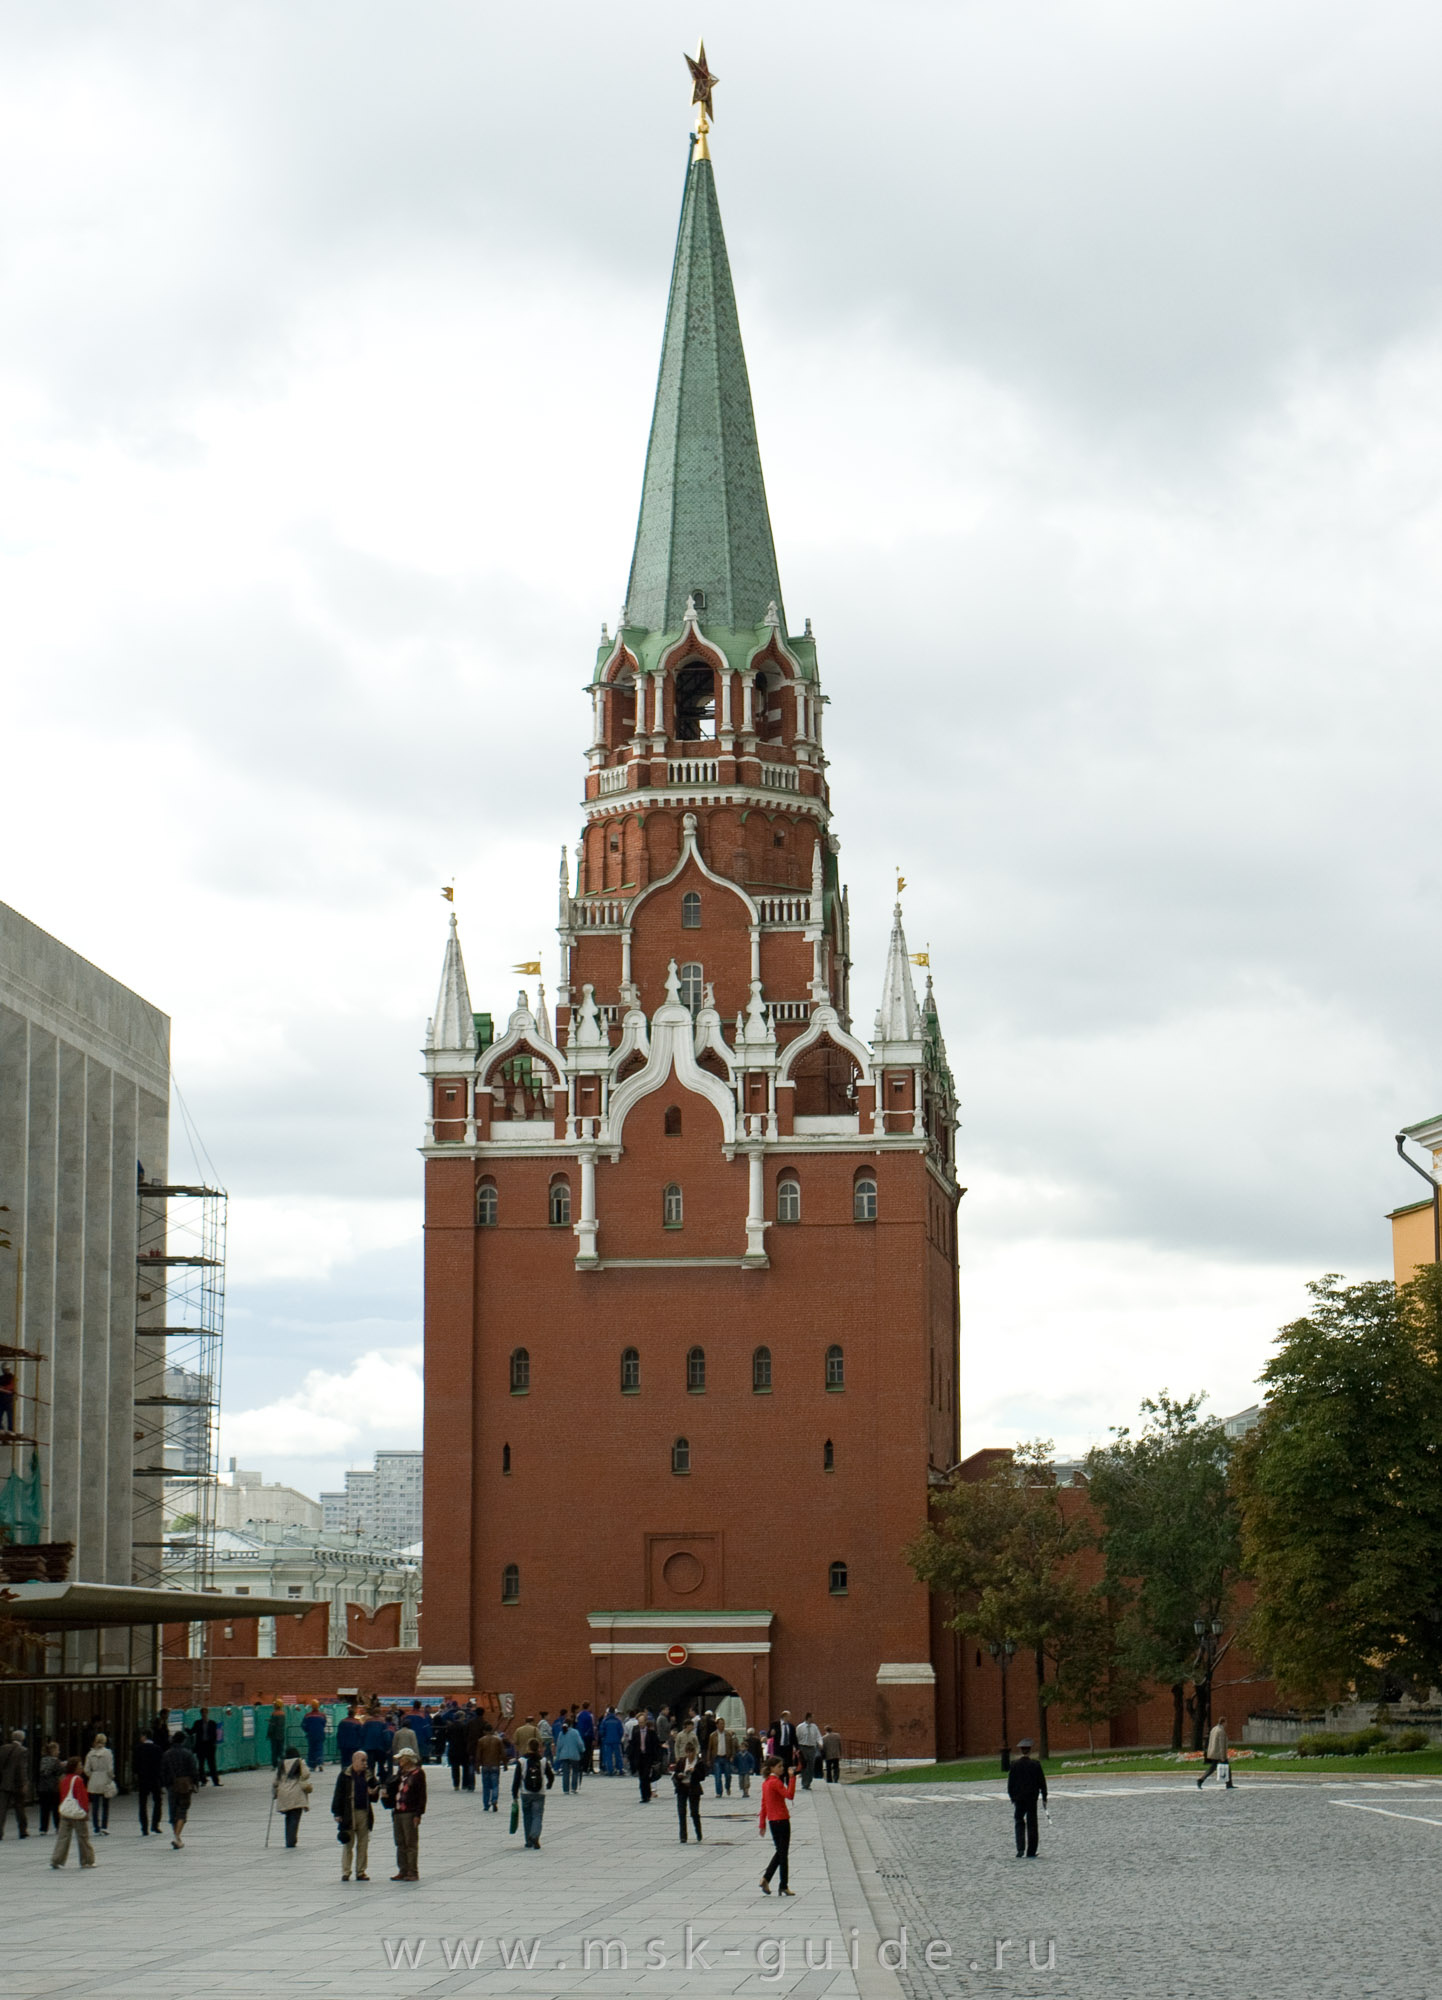 Самое высокое здание кремля